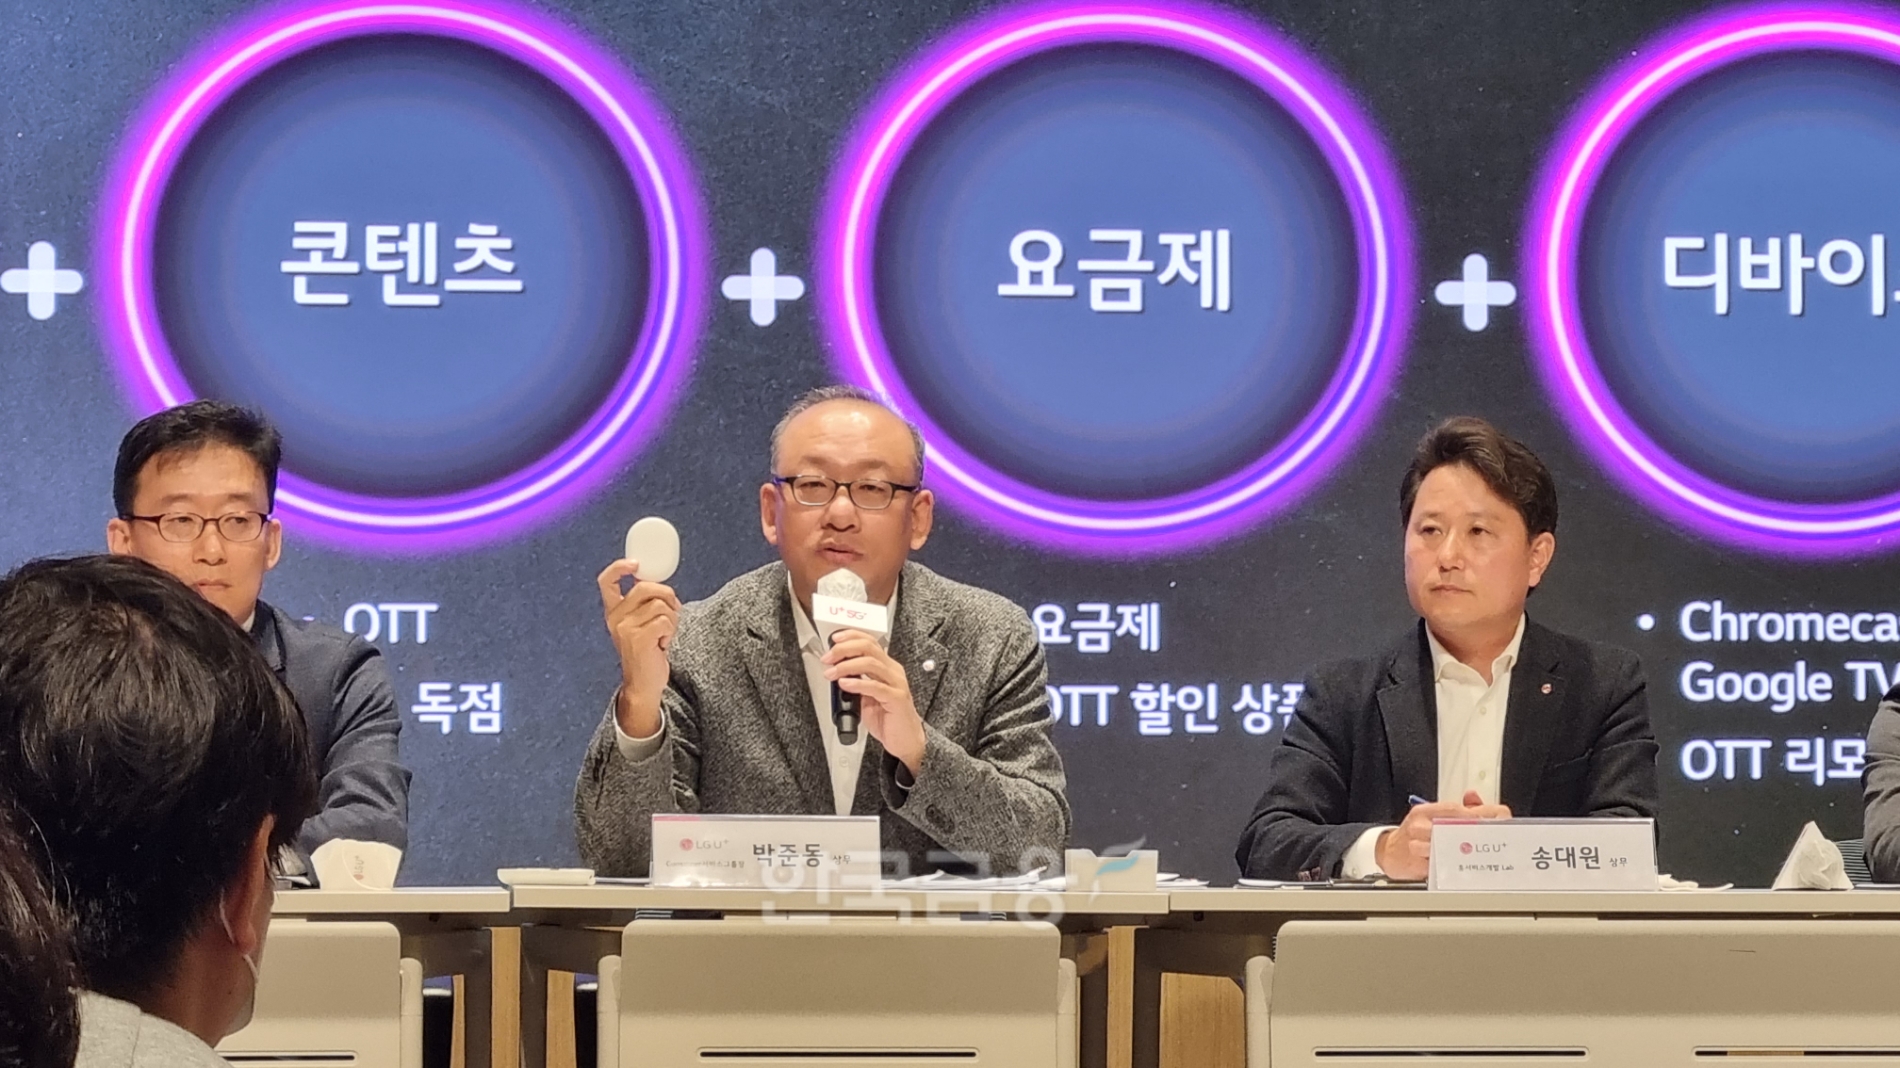 박준동 LG유플러스 컨슈머서비스그룹장이 '구글 크롬캐스트'를 소개하고 있다.2022.11.18/사진=정은경 기자